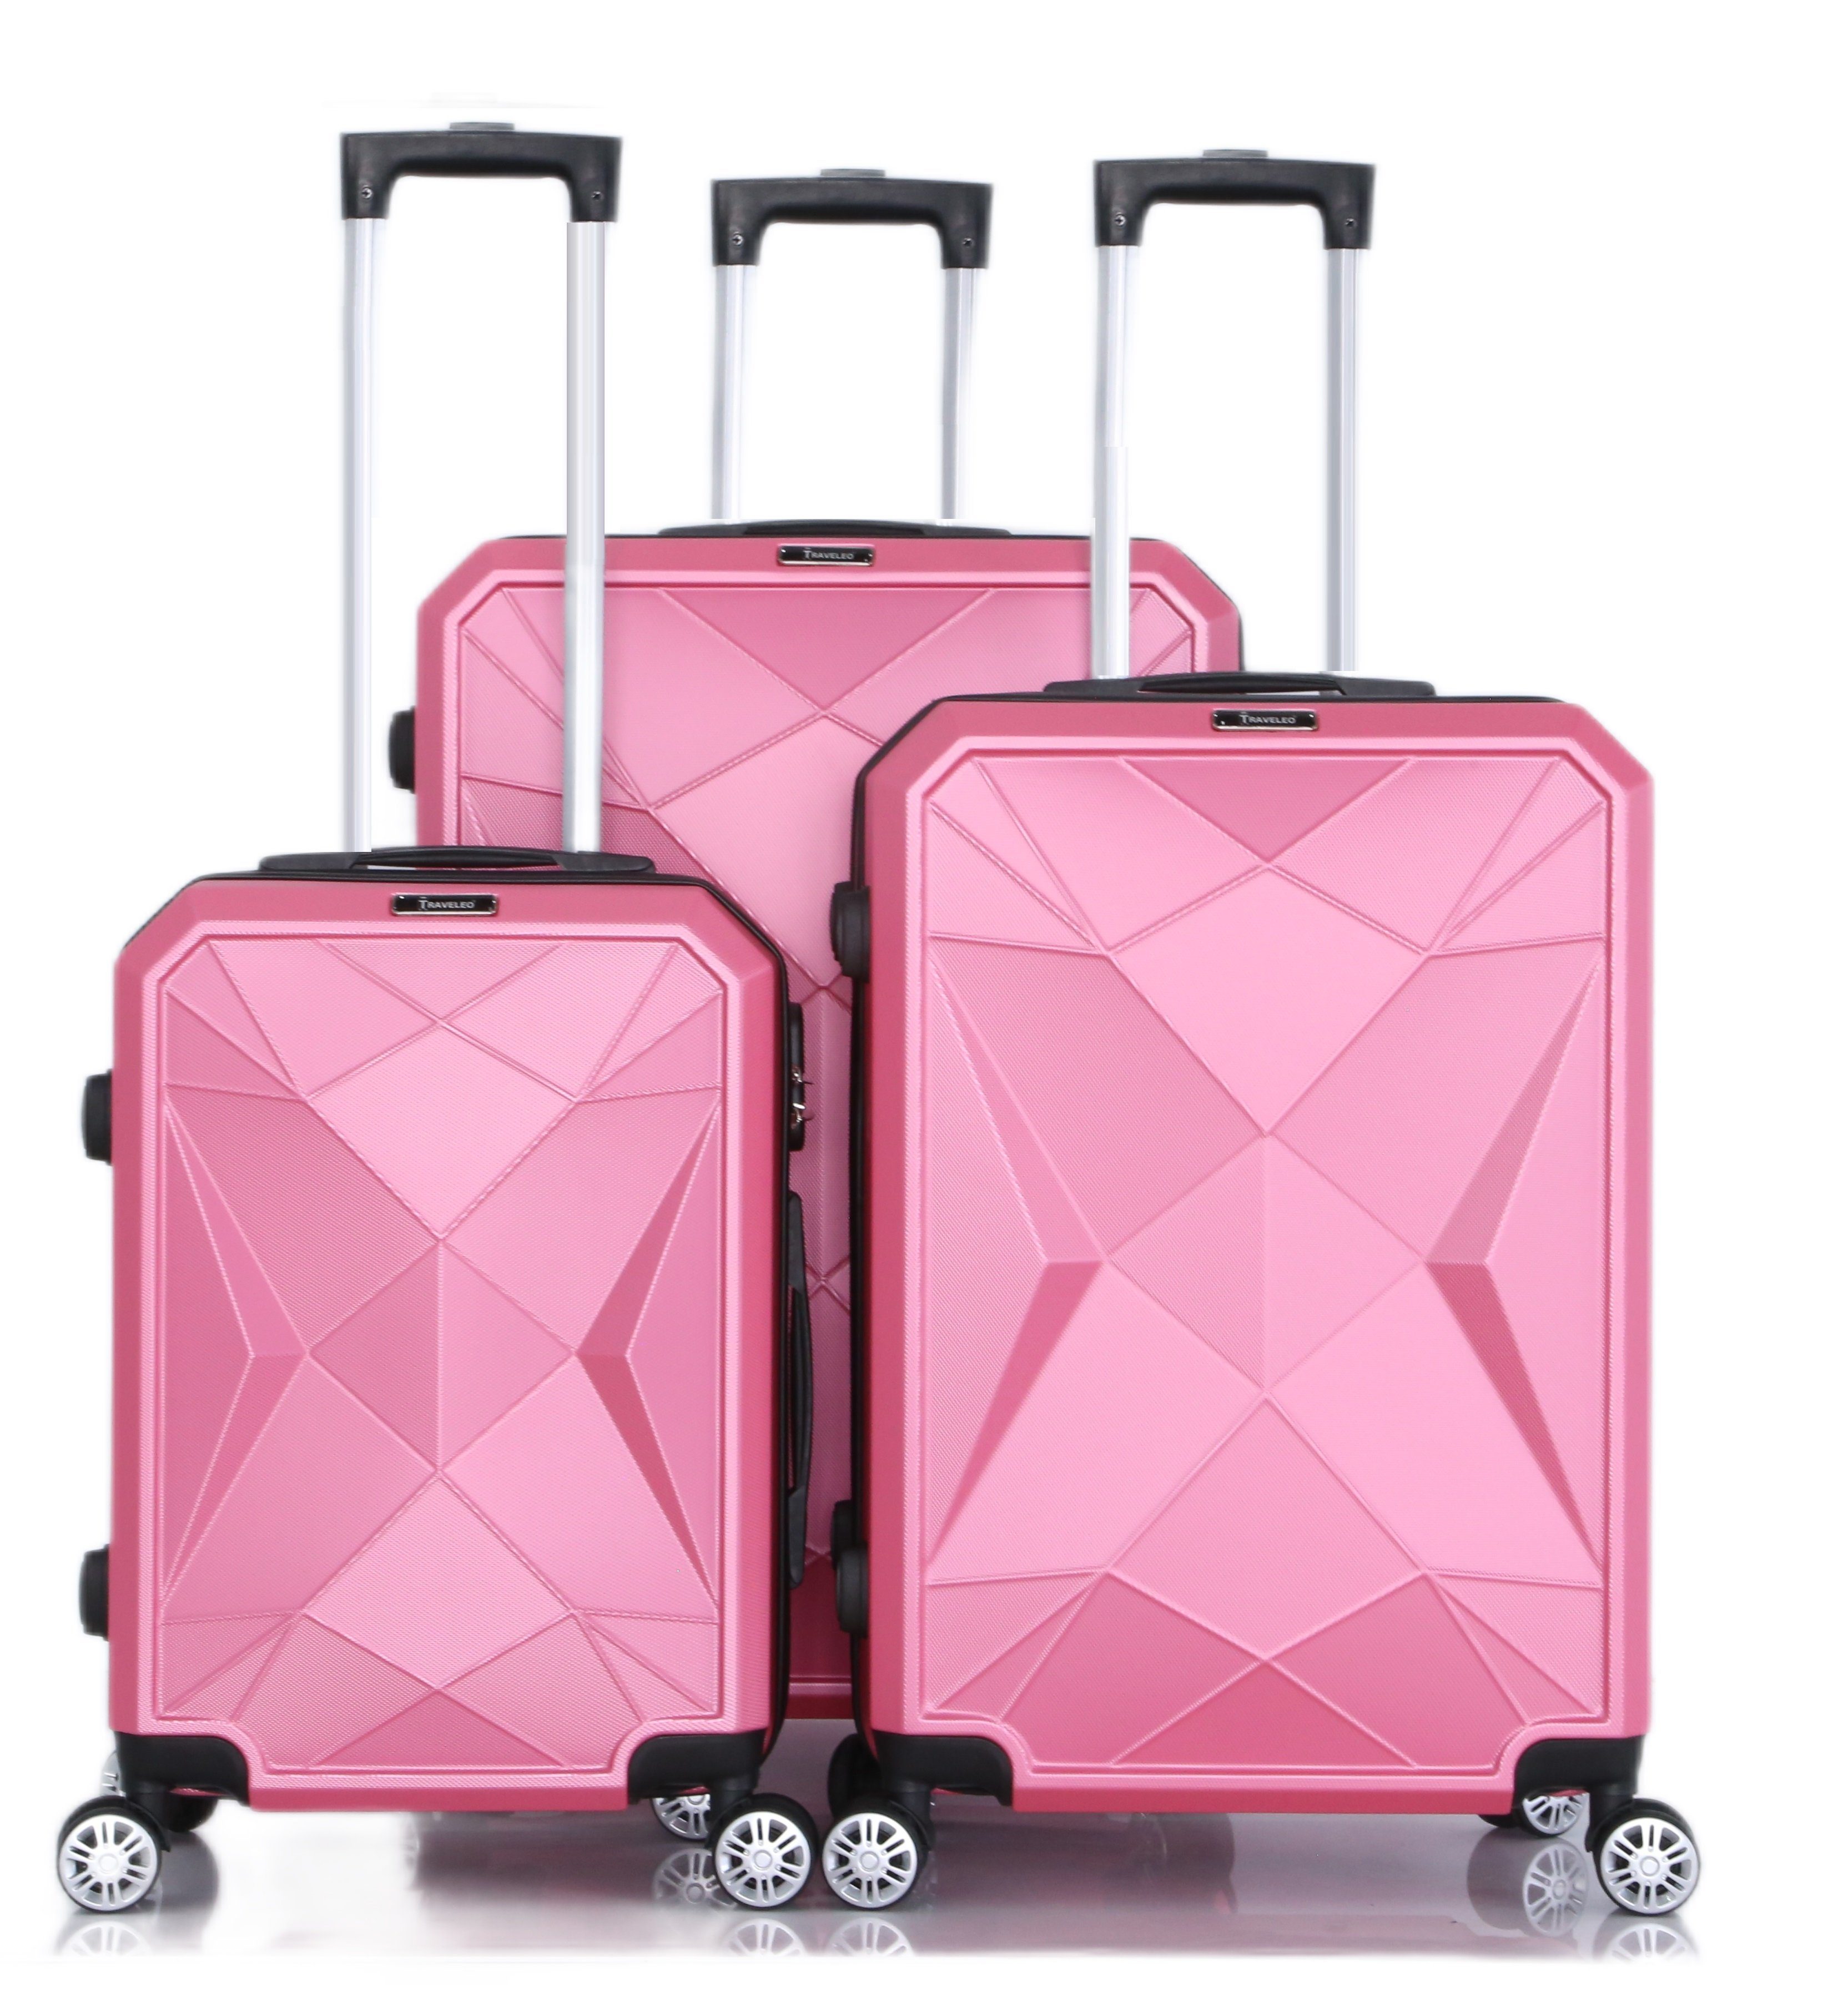 Cheffinger Kofferset Reisekoffer Koffer 3-teilig Kofferset Handgepäck Gepäck Reisetasche Pink